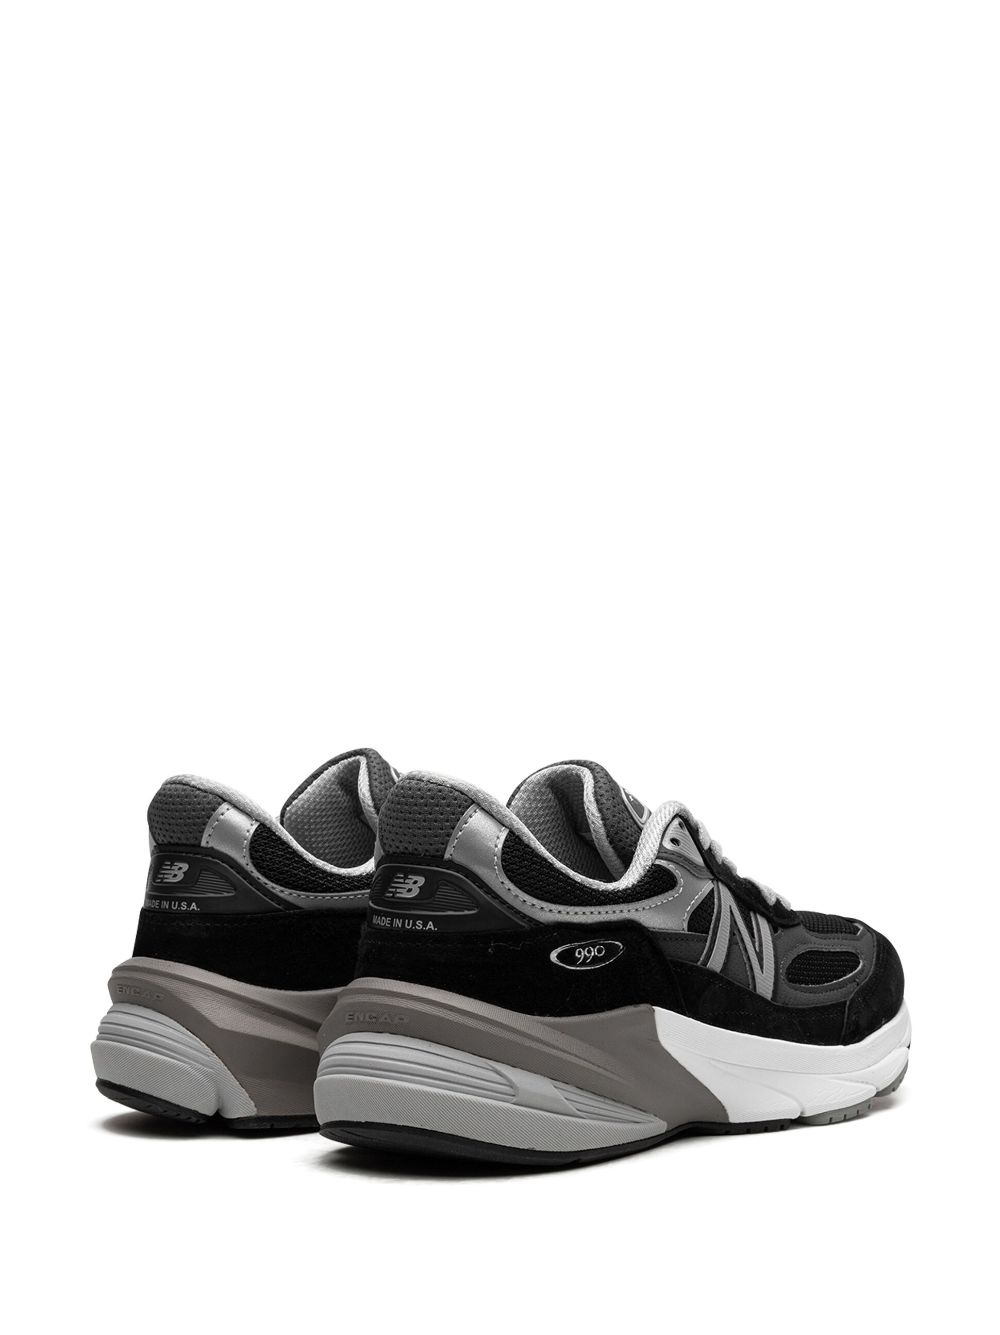 990v6 "Black/Silver" sneakers - 3